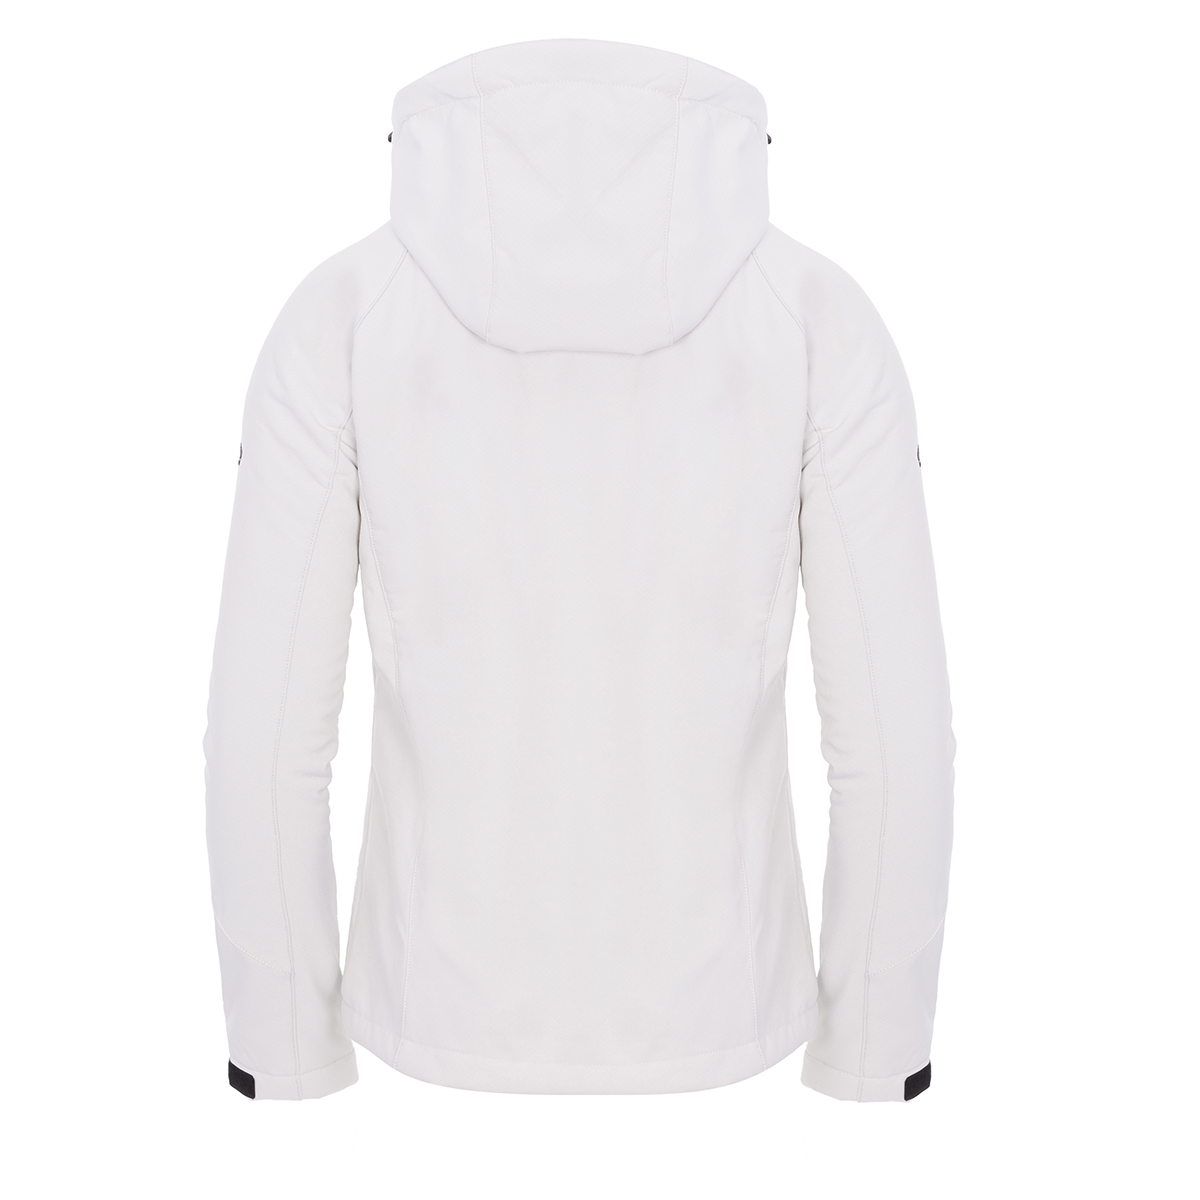 Izas Oshawa Women's Hooded Softshell Jacket (X-Small, White/White) - image 2 of 4